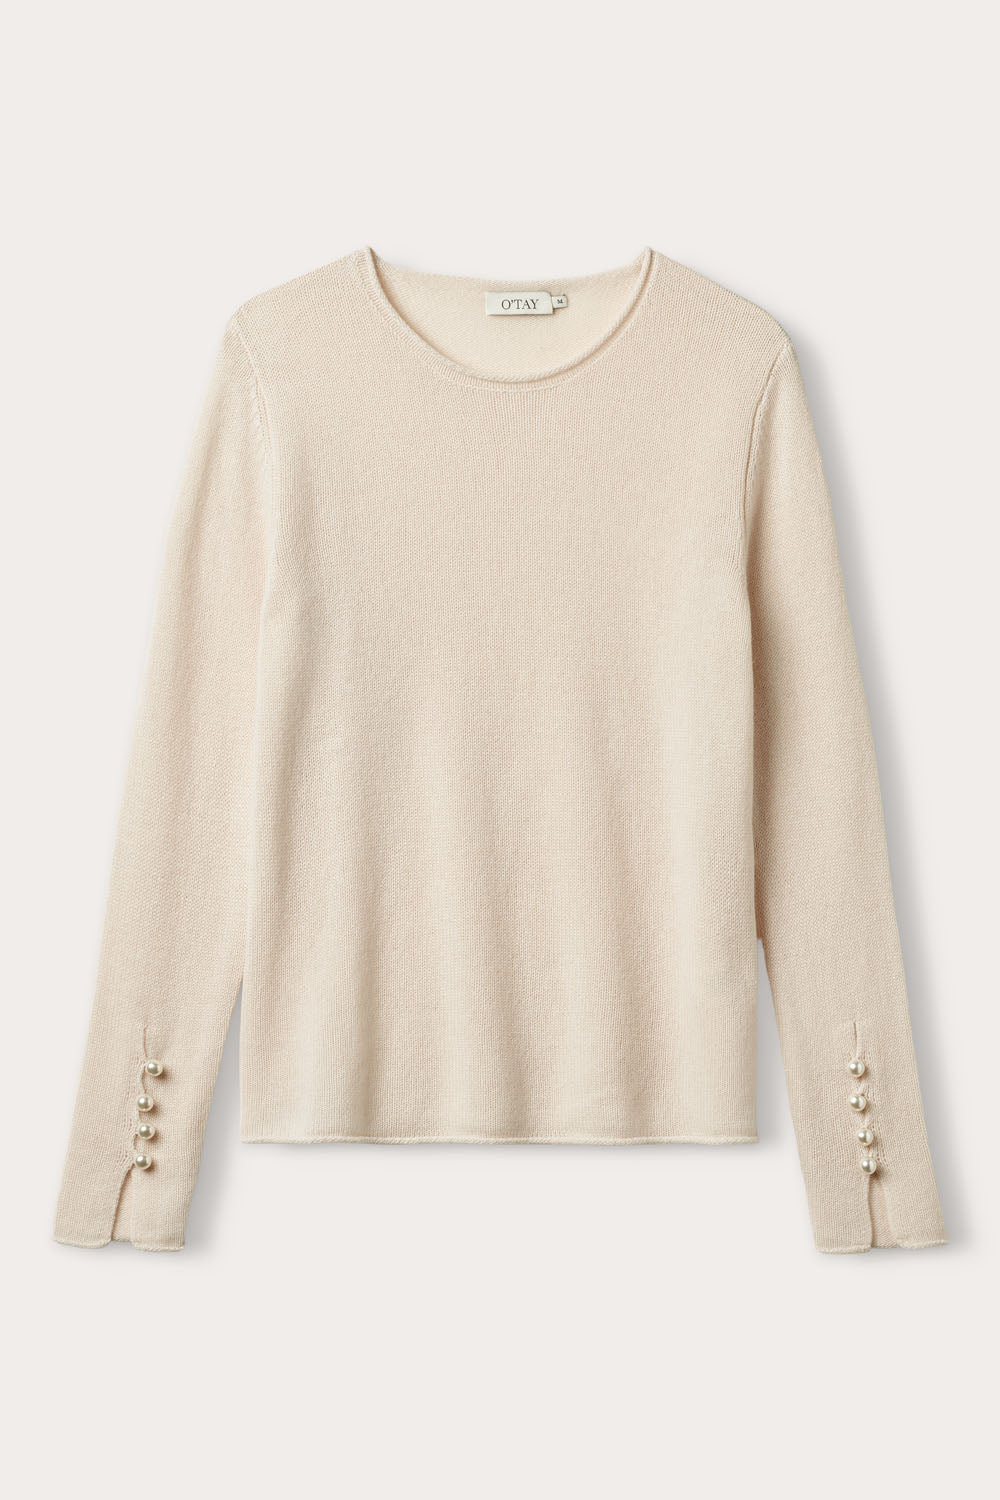 O'TAY Abbelone Sweater Bluser Delicate White